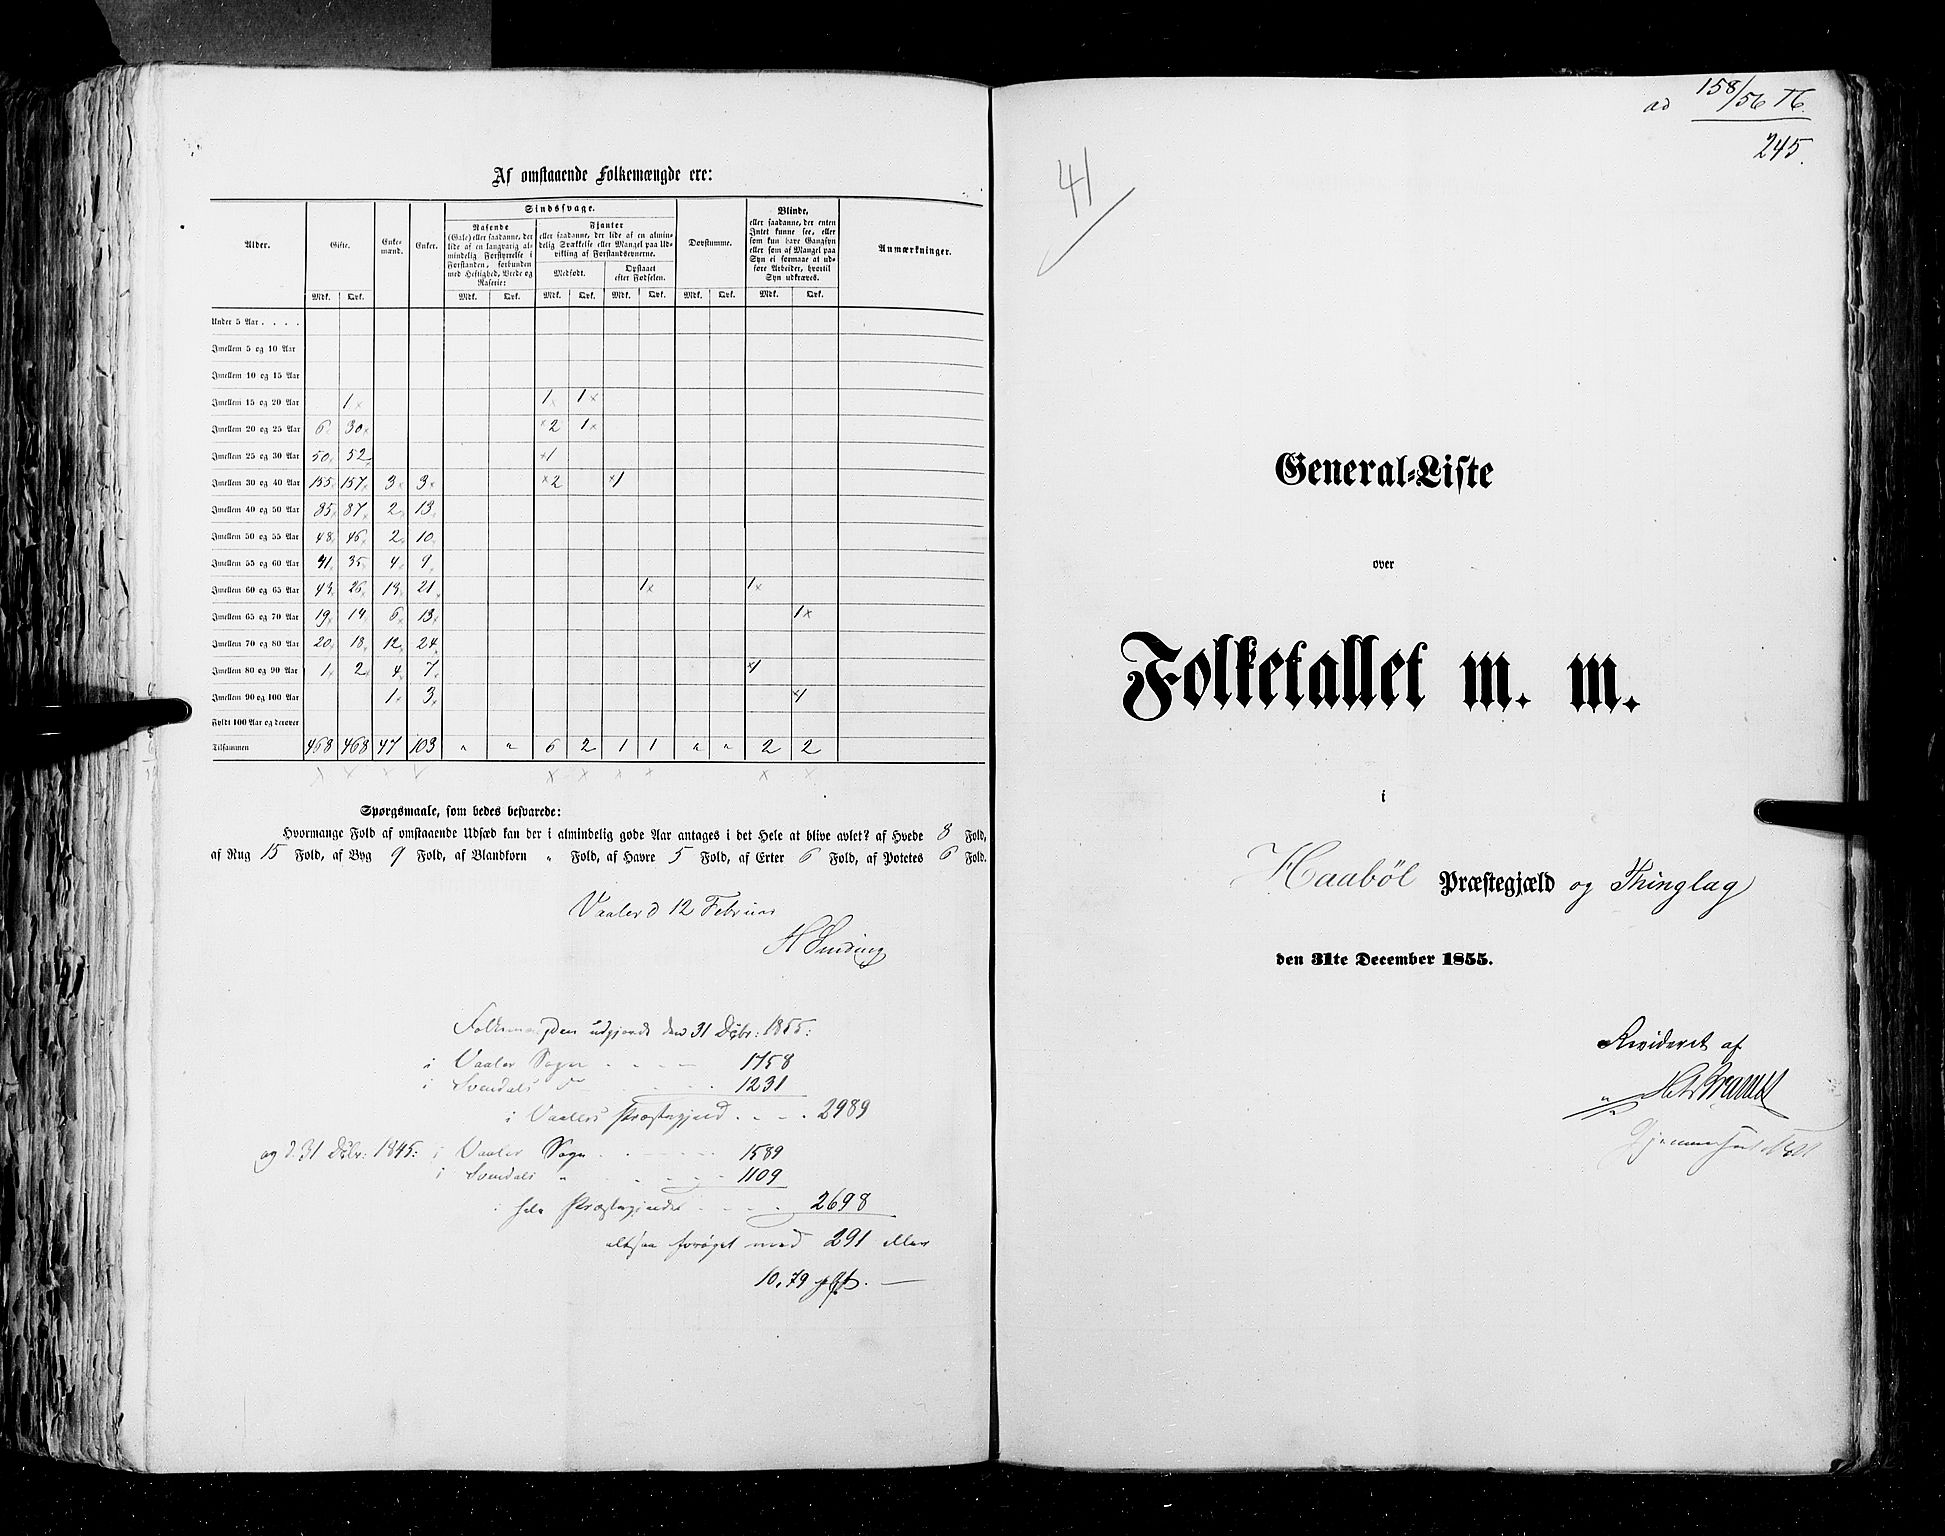 RA, Folketellingen 1855, bind 1: Akershus amt, Smålenenes amt og Hedemarken amt, 1855, s. 245